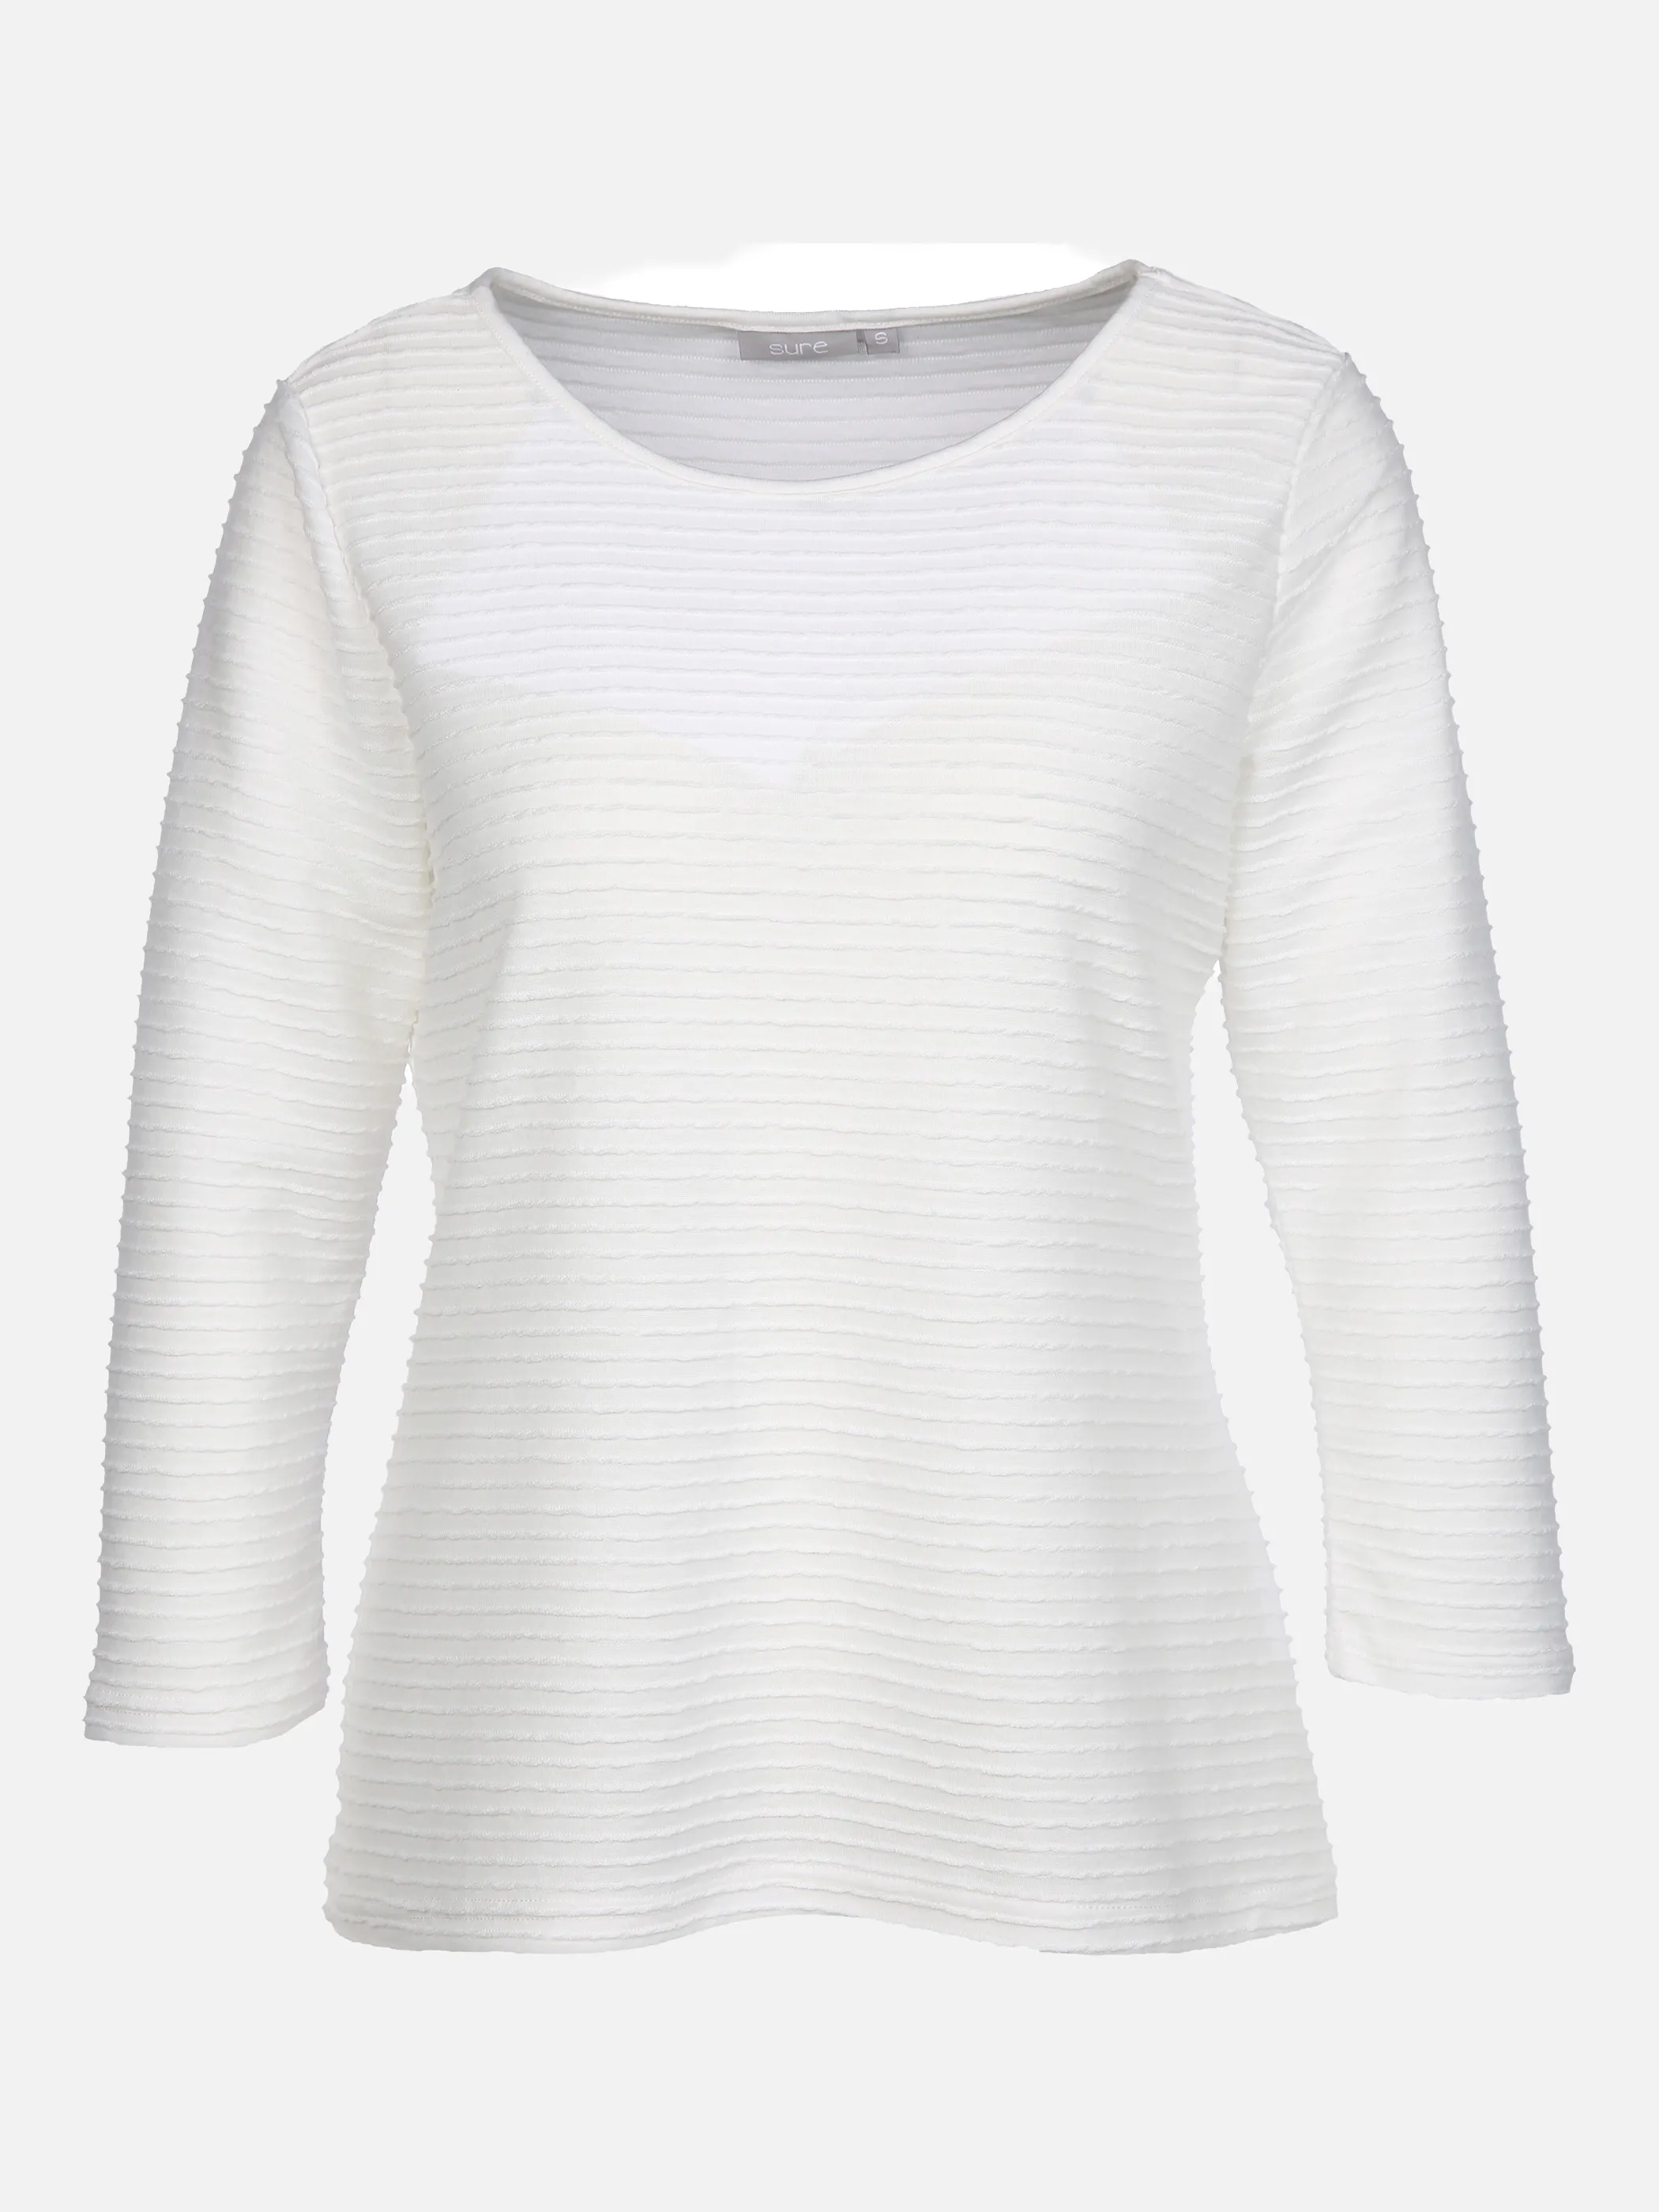 Sure Da-Struktur-Shirt 3/4 Arm Weiß 858012 OFFWHITE 1